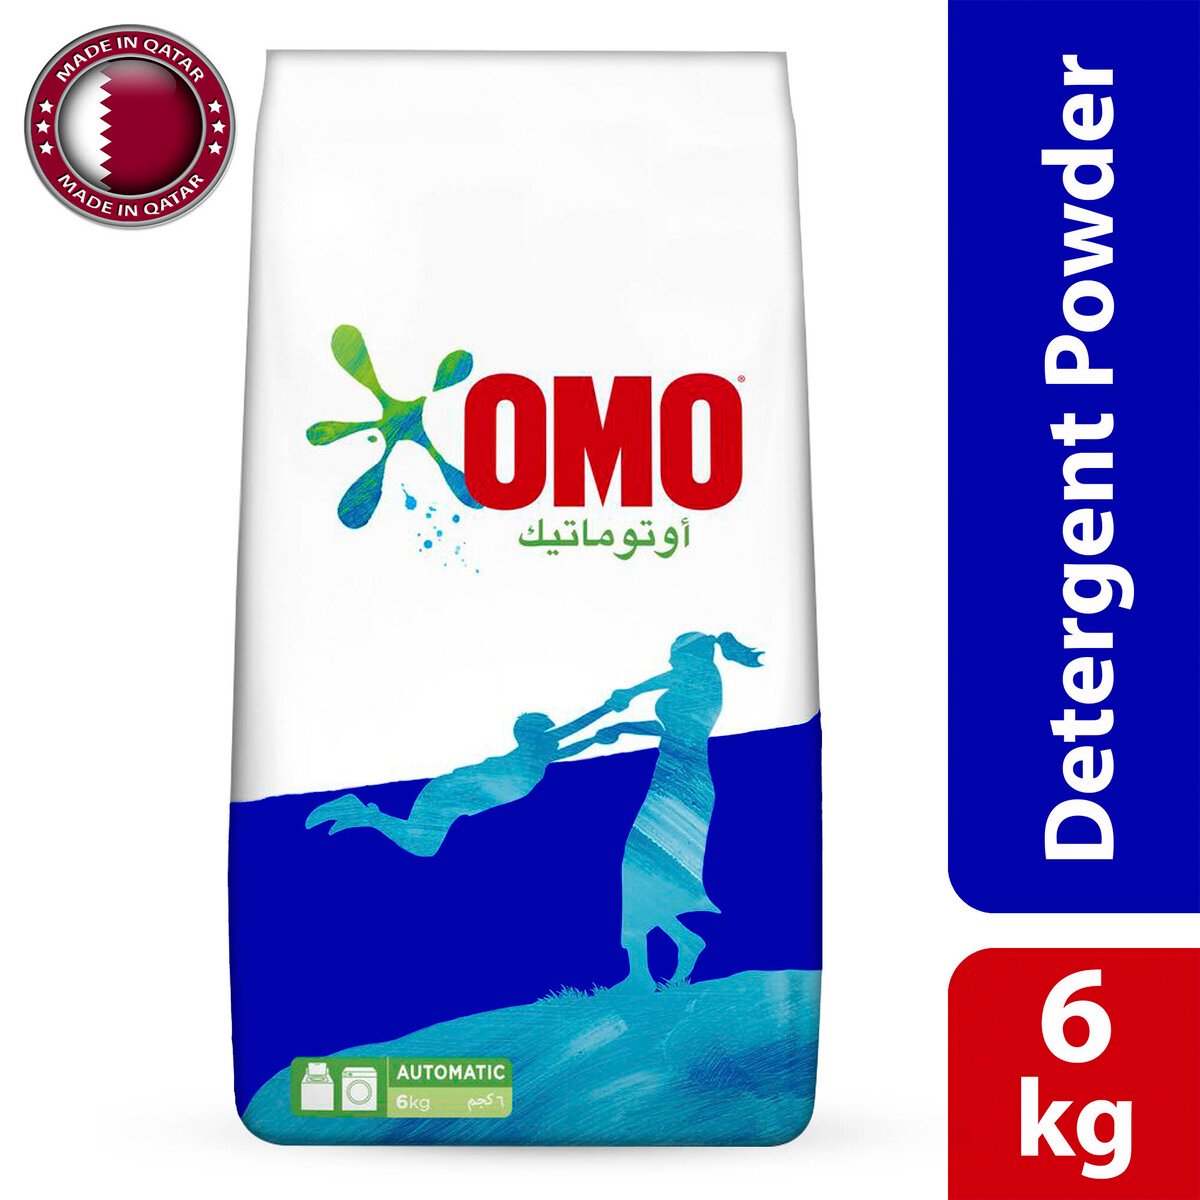 Omo Washing Powder Automatic 6kg